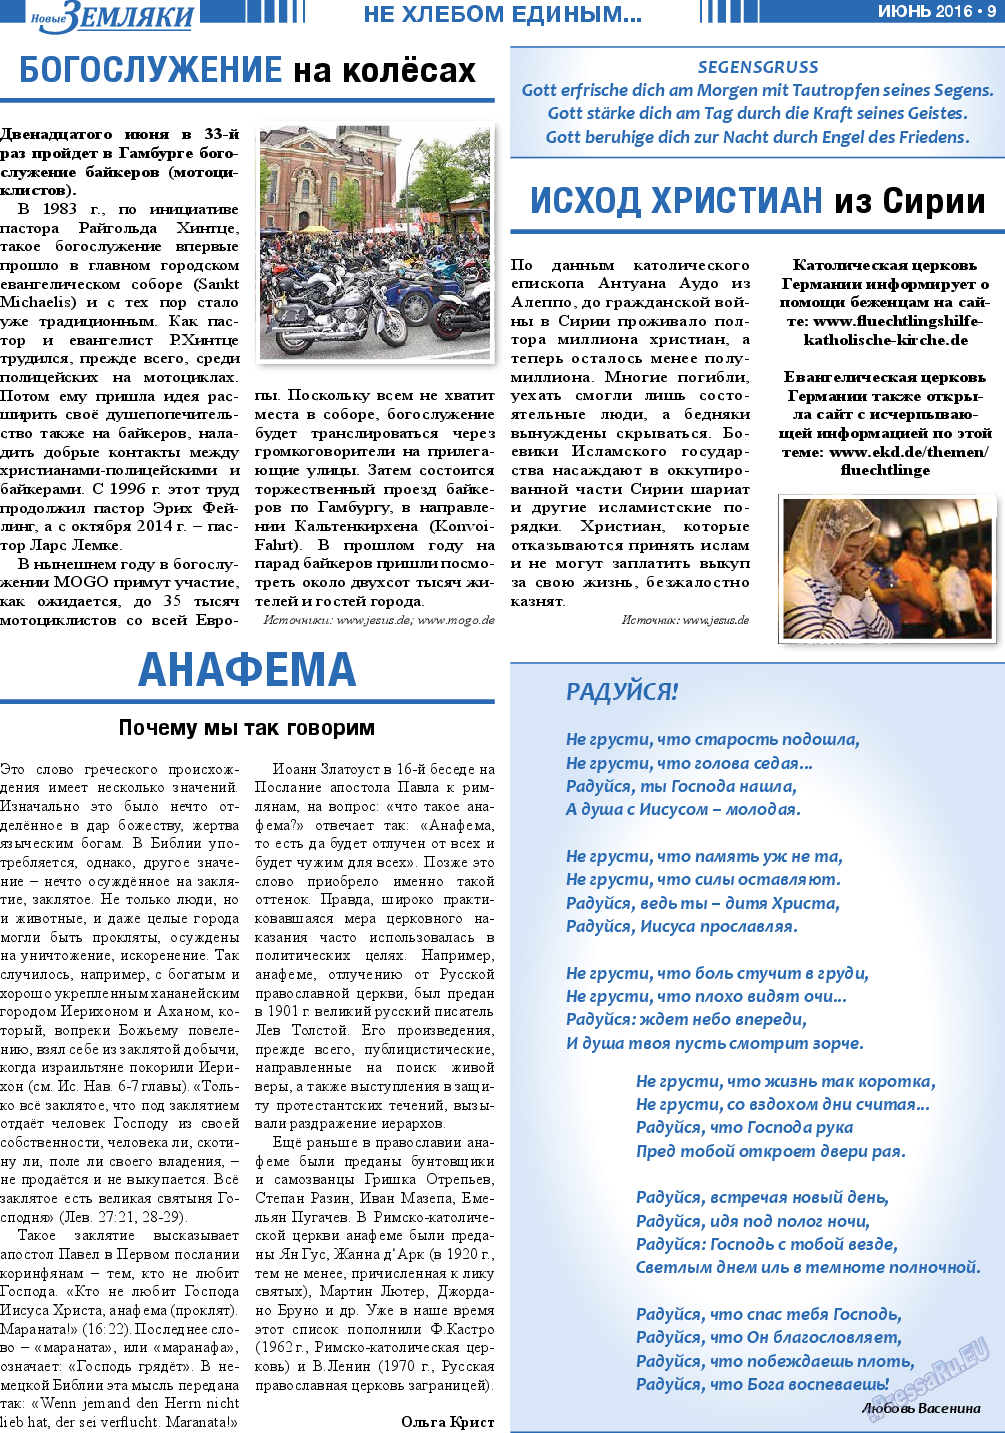 Новые Земляки (газета). 2016 год, номер 6, стр. 9